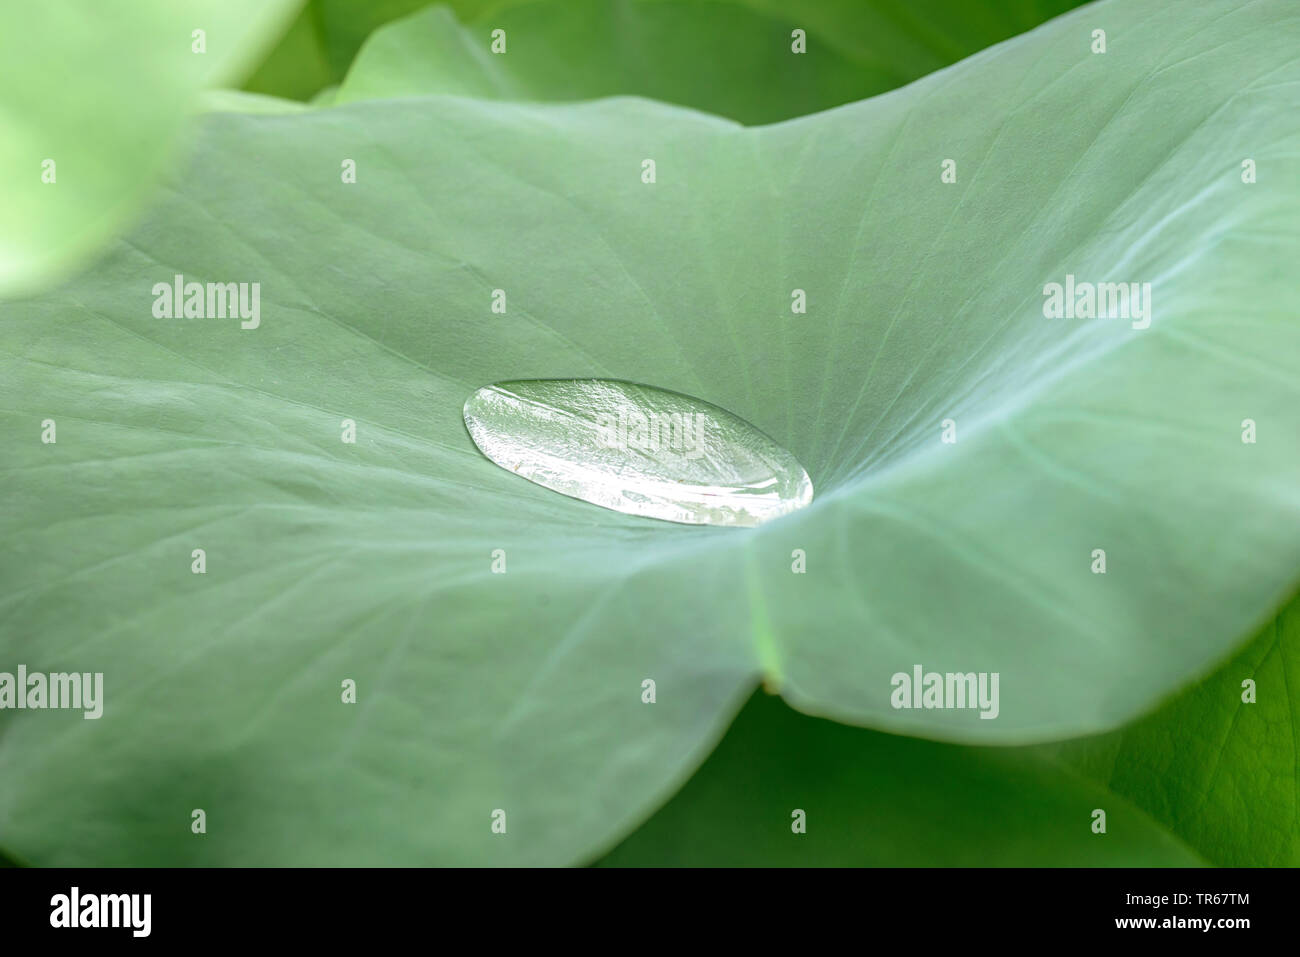 East Indian lotus (Nelumbo nucifera), avec partie goutte d'eau, effet lotos, Germany Banque D'Images